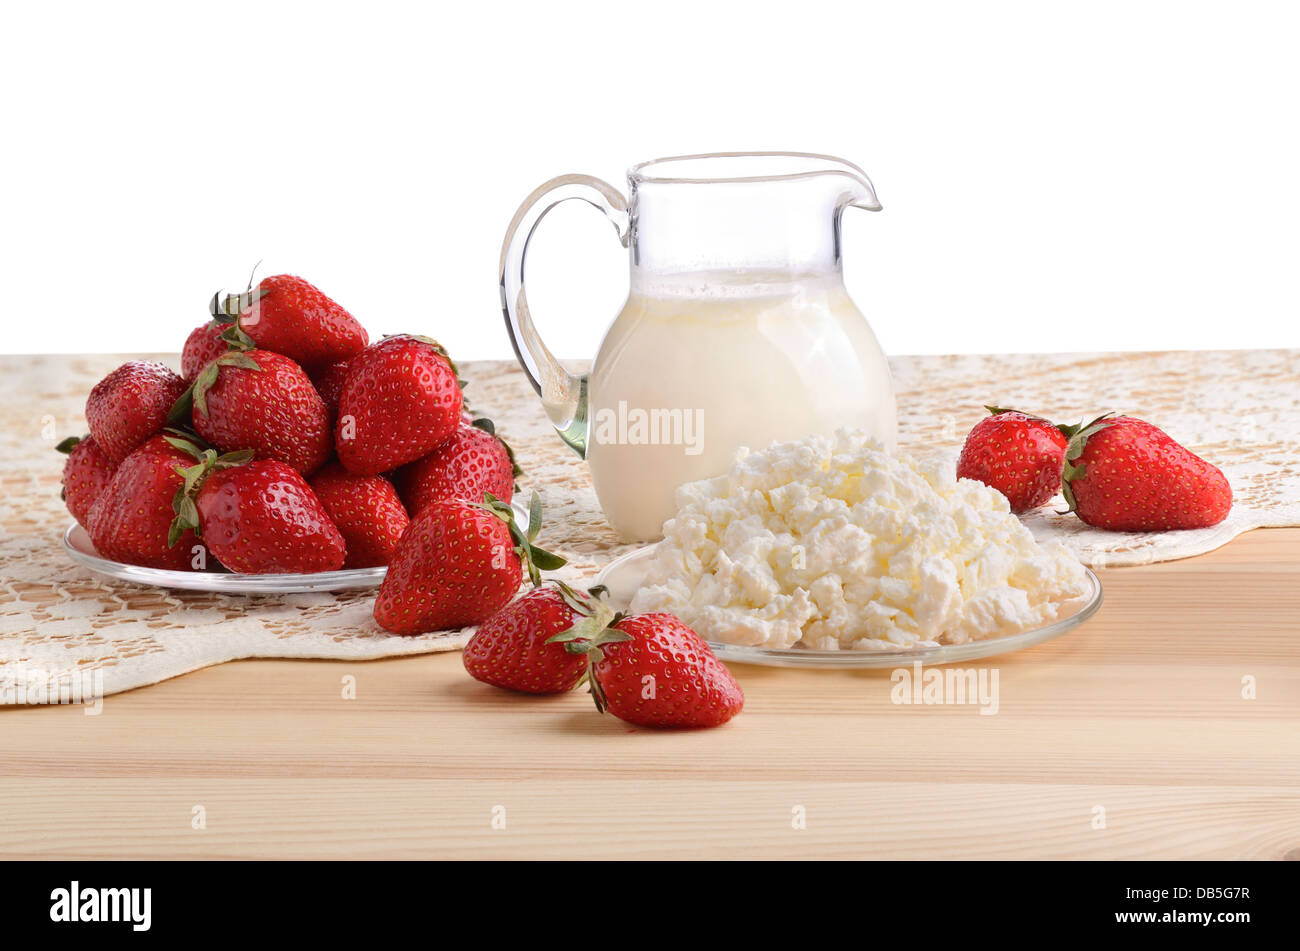 Une fraise mûre, du lait et du fromage cottage sur une nappe en bonneterie Banque D'Images